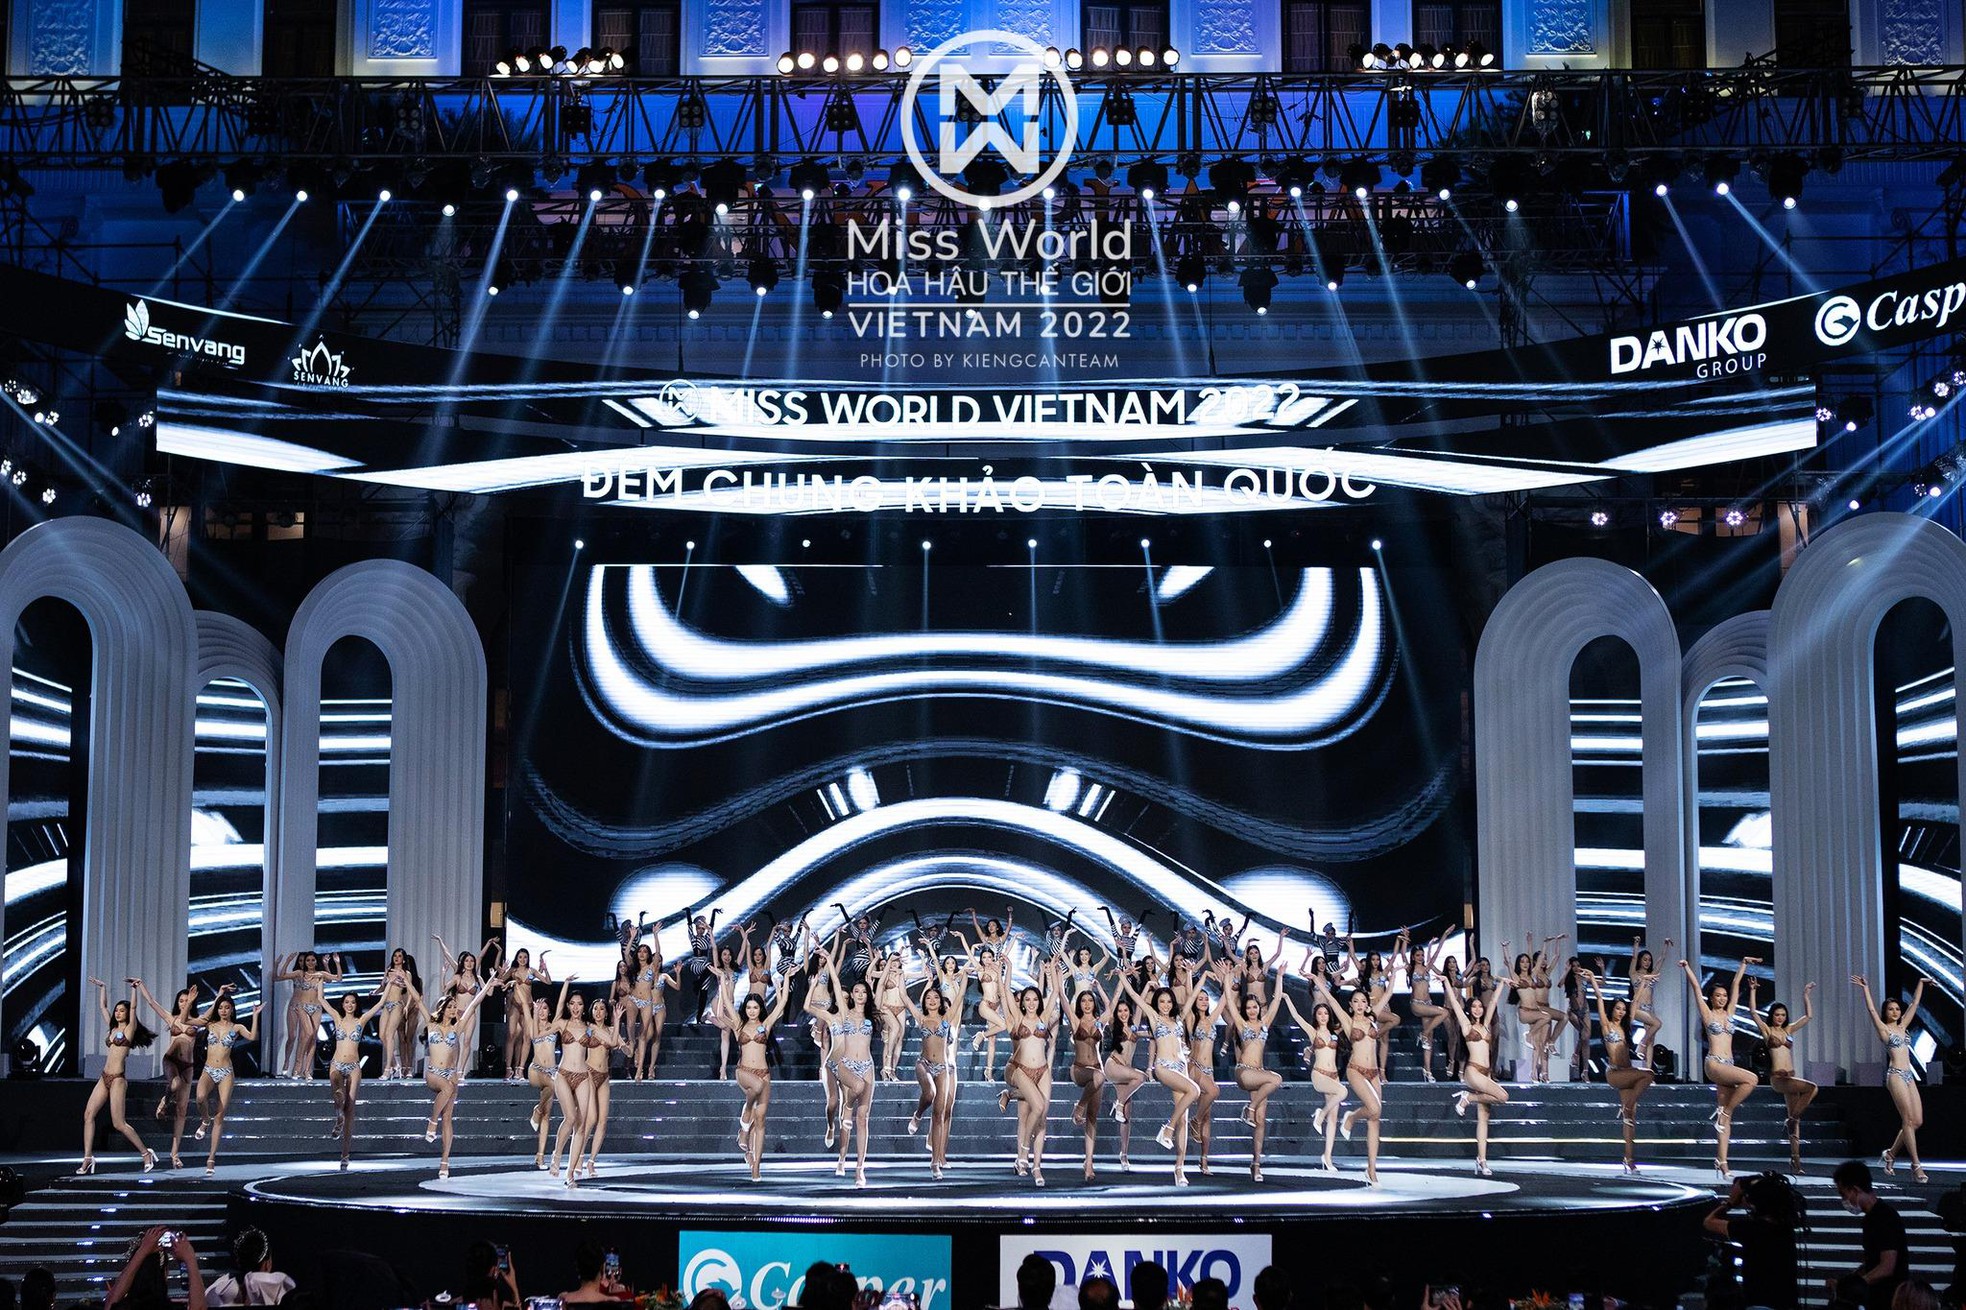 Nhìn lại màn đồng diễn bikini nóng bỏng đẹp mắt của top 45 Miss World Việt Nam 2022 - Ảnh 9.